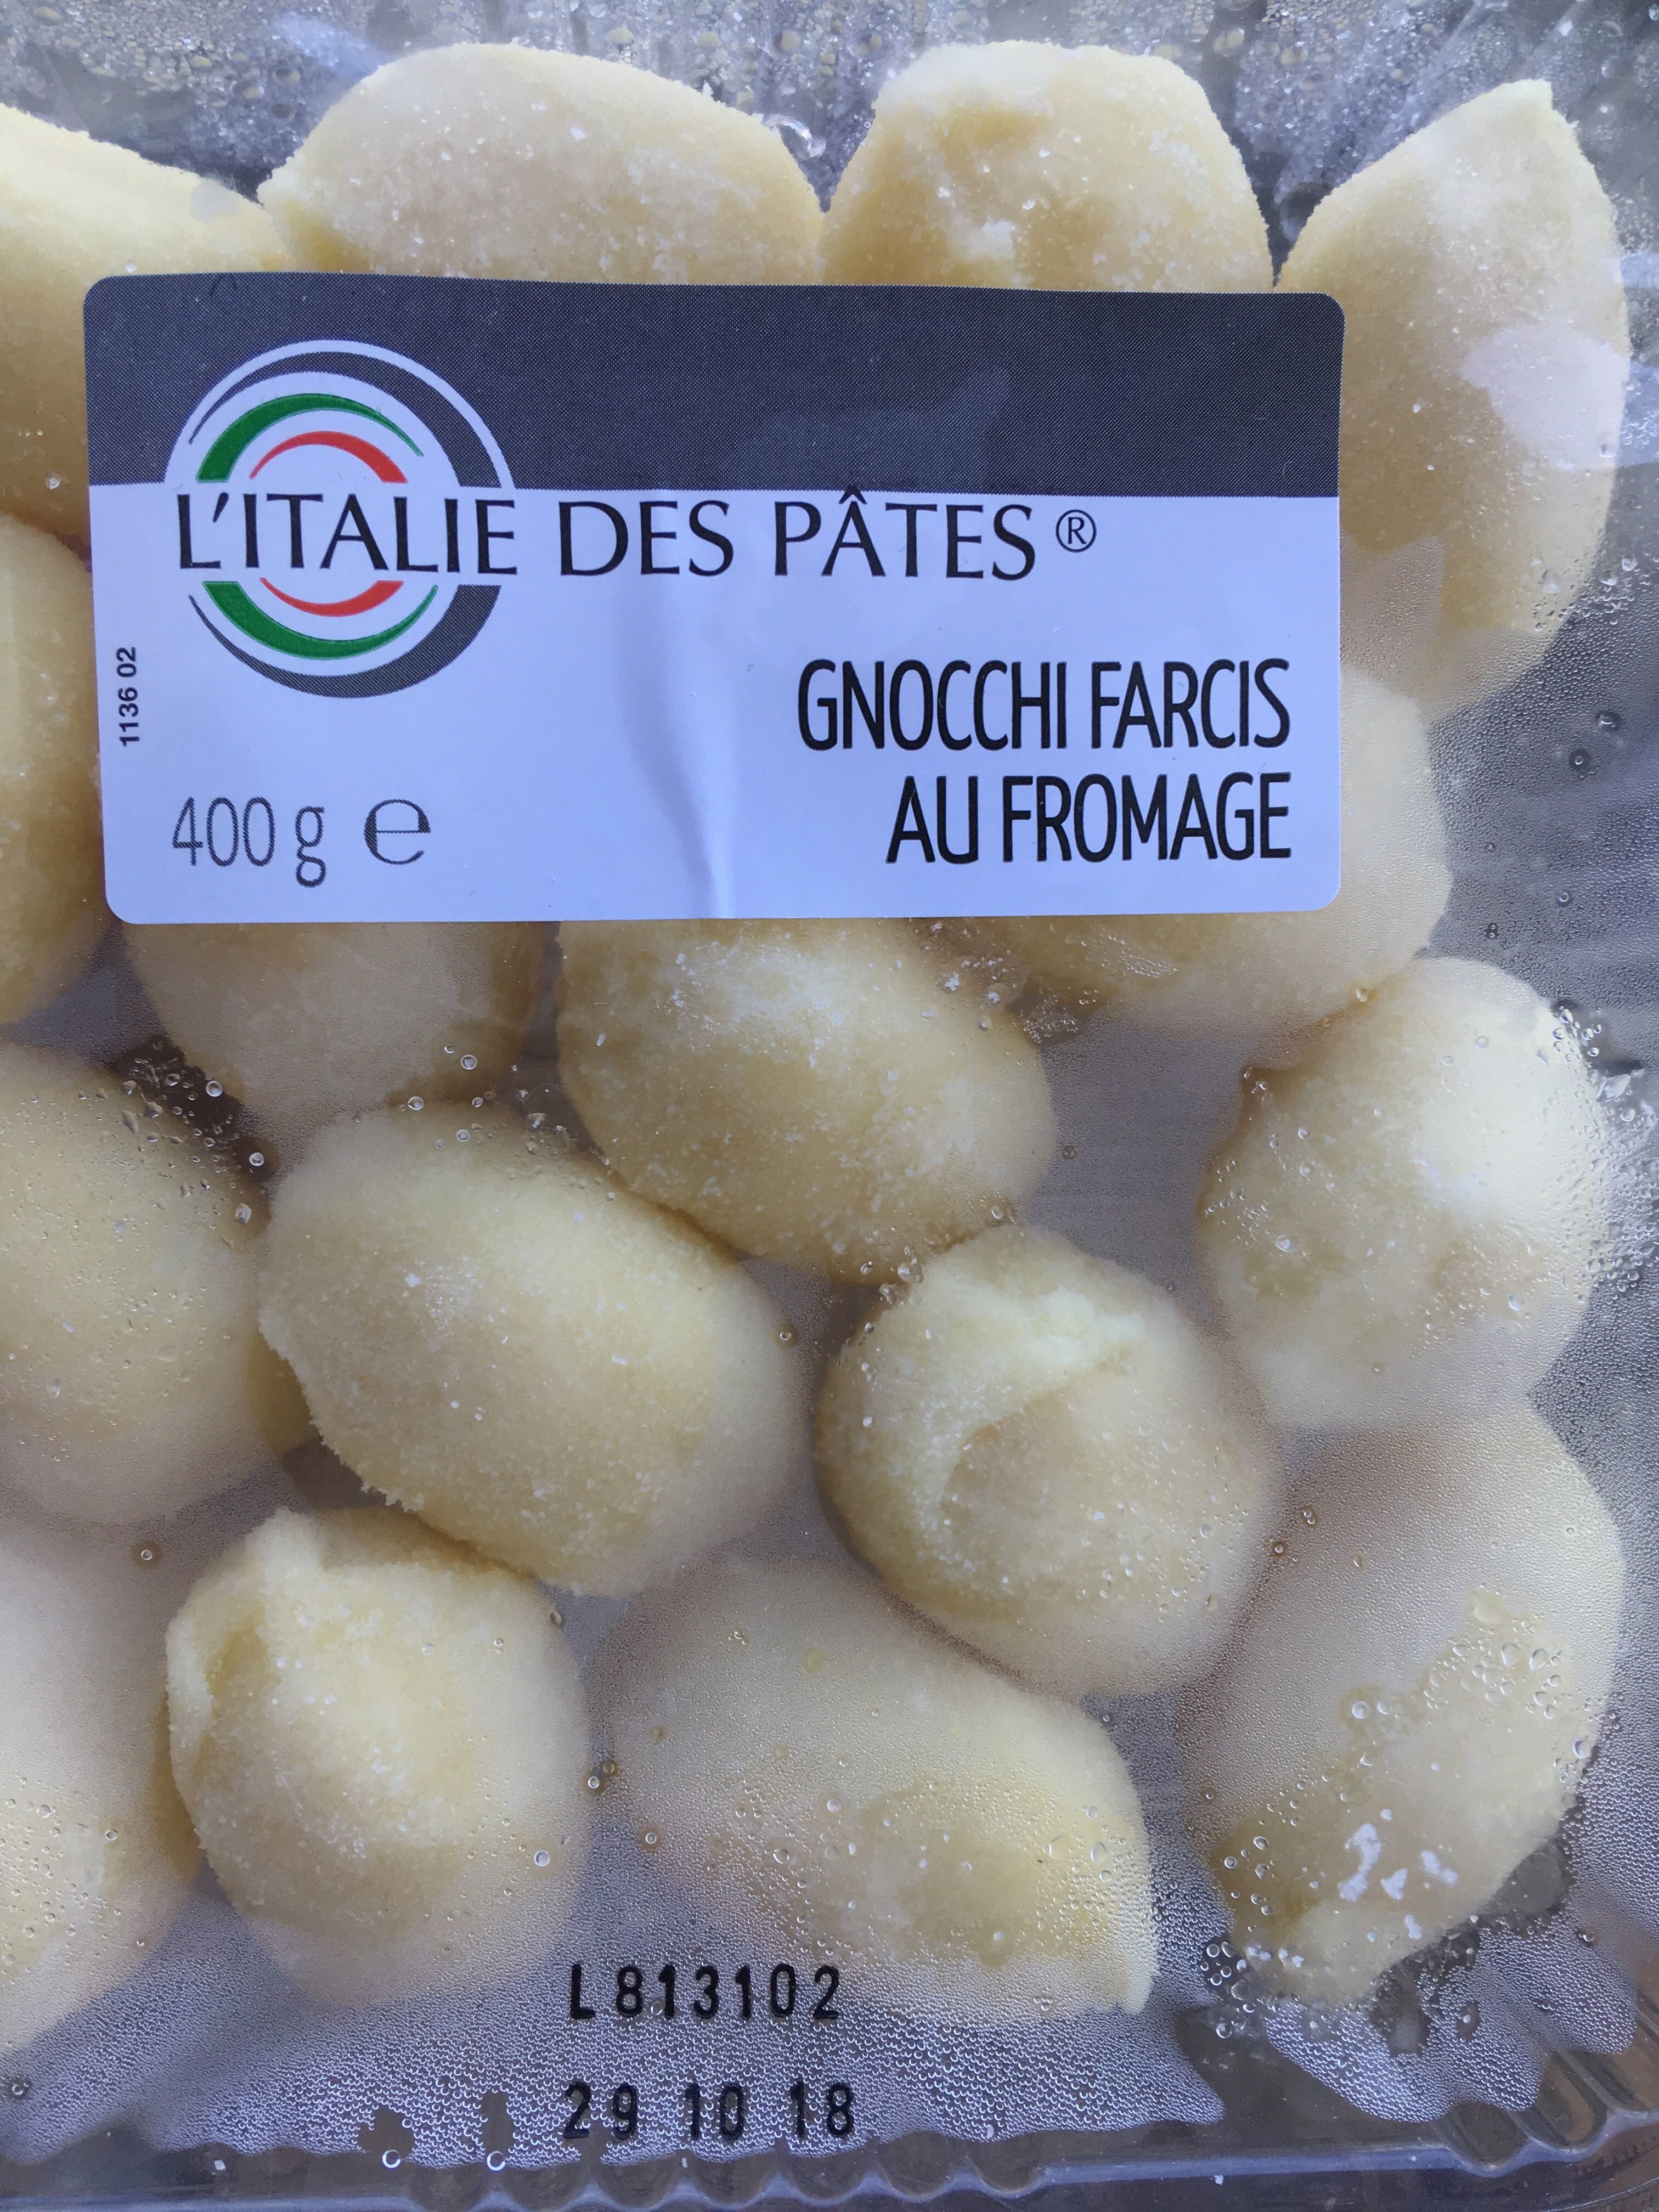 Gnocchi farcis au fromage - Instruction de recyclage et/ou informations d'emballage